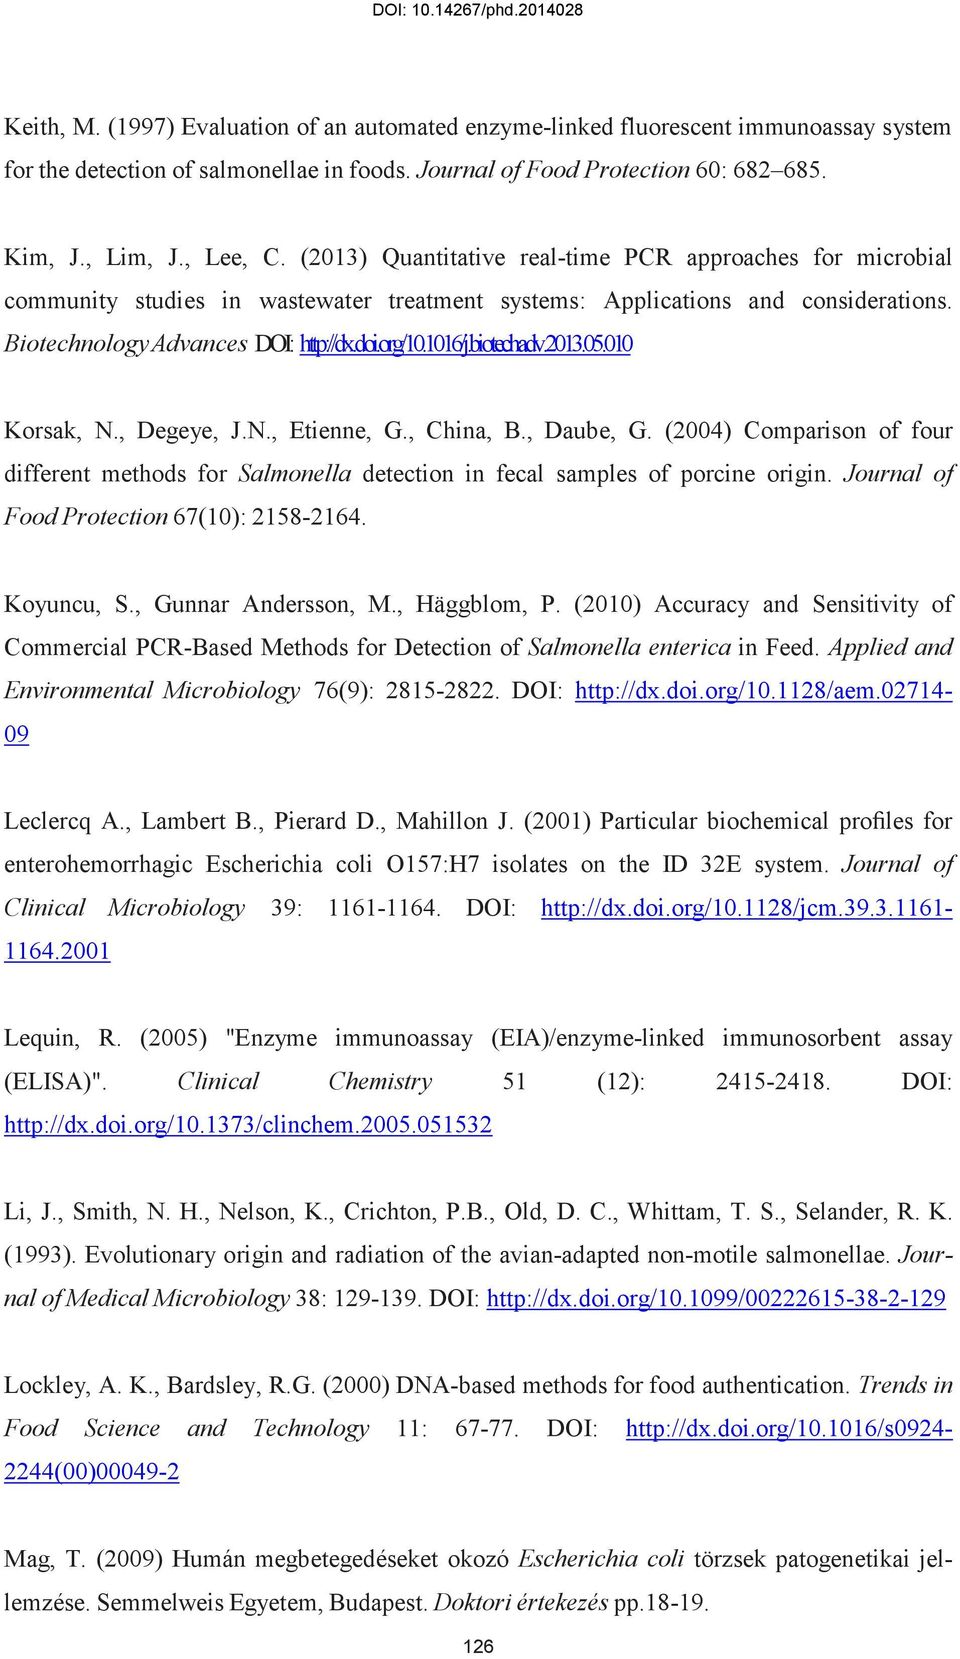 biotechadv.2013.05.010 Korsak, N., Degeye, J.N., Etienne, G., China, B., Daube, G. (2004) Comparison of four different methods for Salmonella detection in fecal samples of porcine origin.